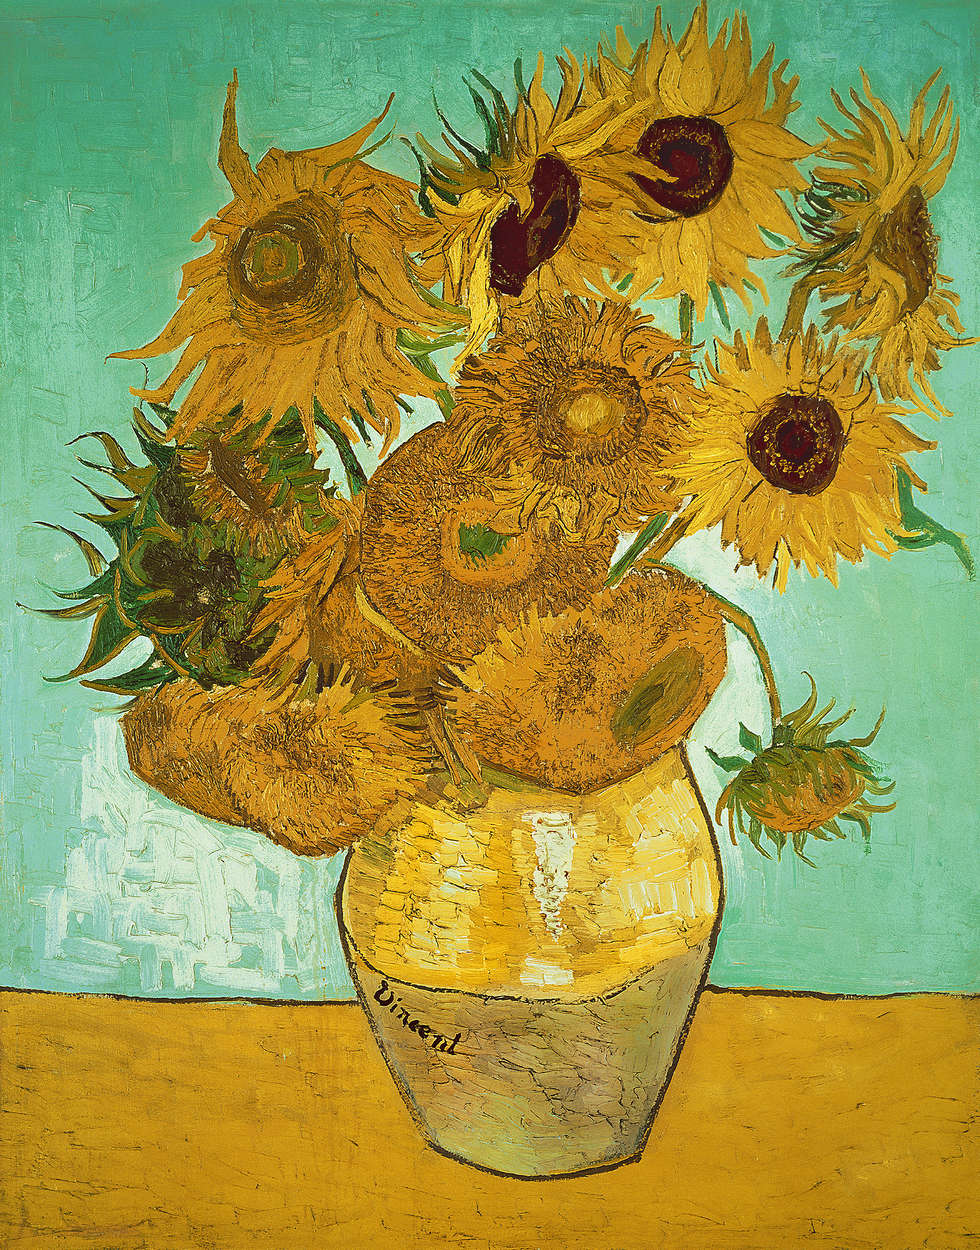             Papier peint panoramique "Tournesols" de Vincent van Gogh
        